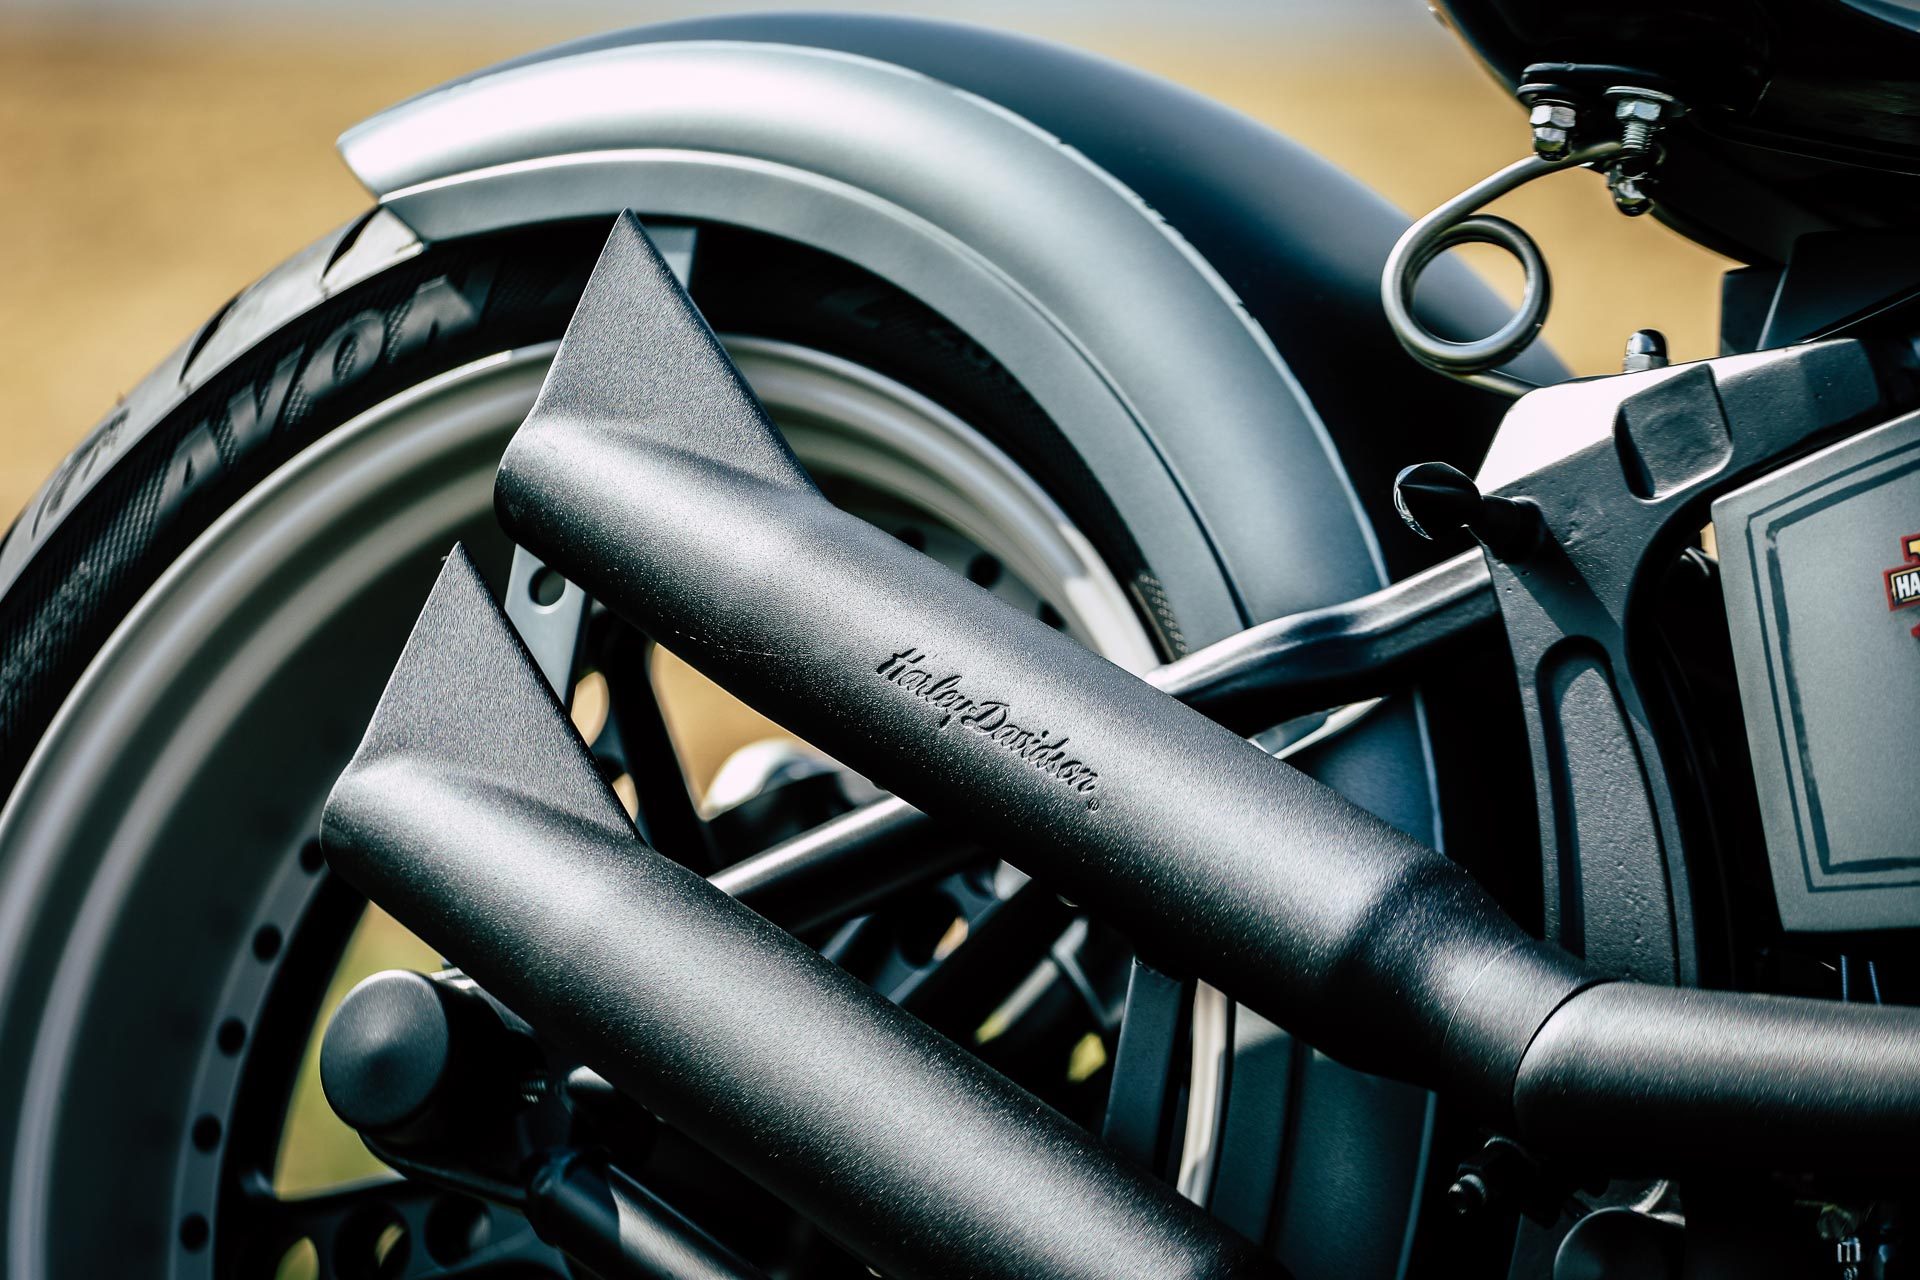 Thunderbike Oldstyle • H-D Softail Slim FLS Custom Springer Bobber